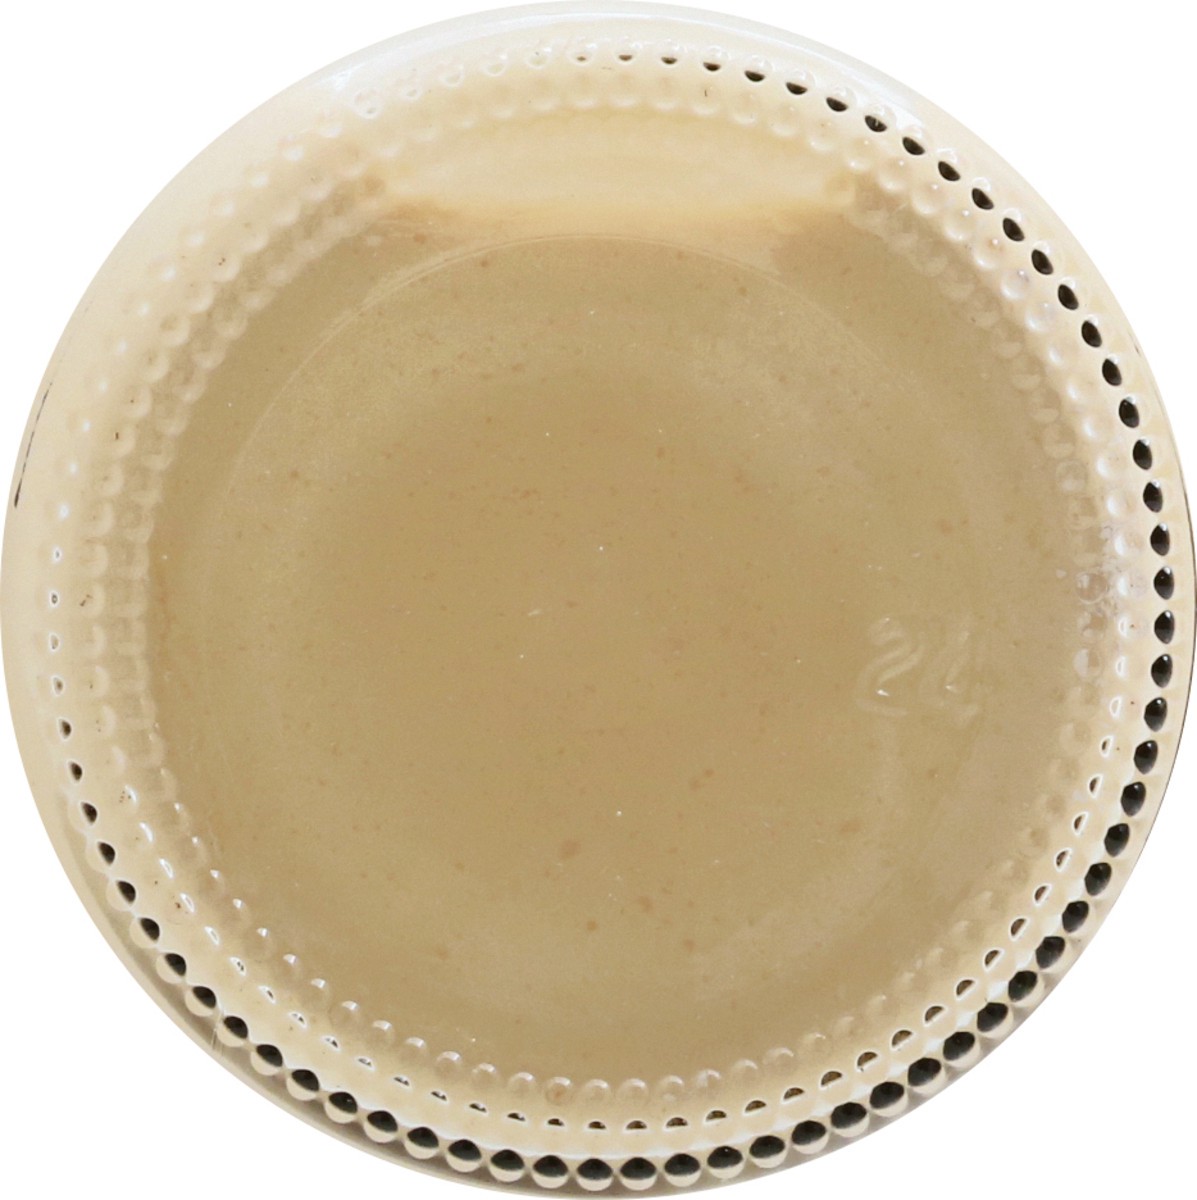 slide 7 of 12, Walden Farms Caramel Coffee Creamer 12 oz, 12 oz